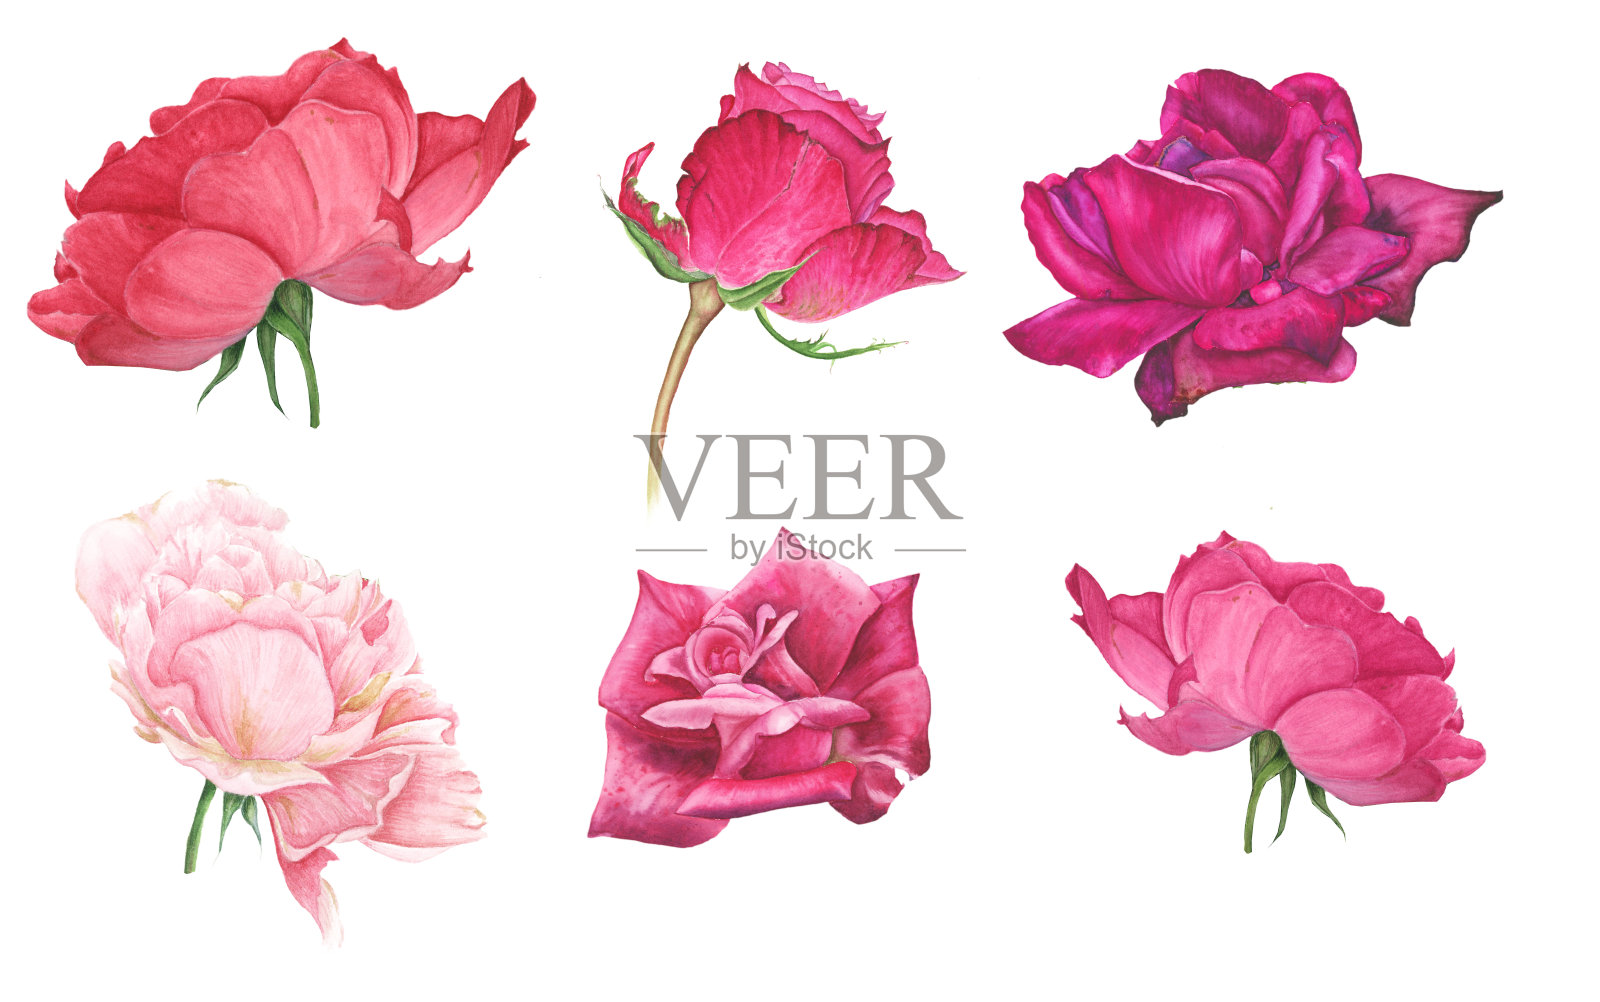 一套粉红色和红色的玫瑰插画图片素材